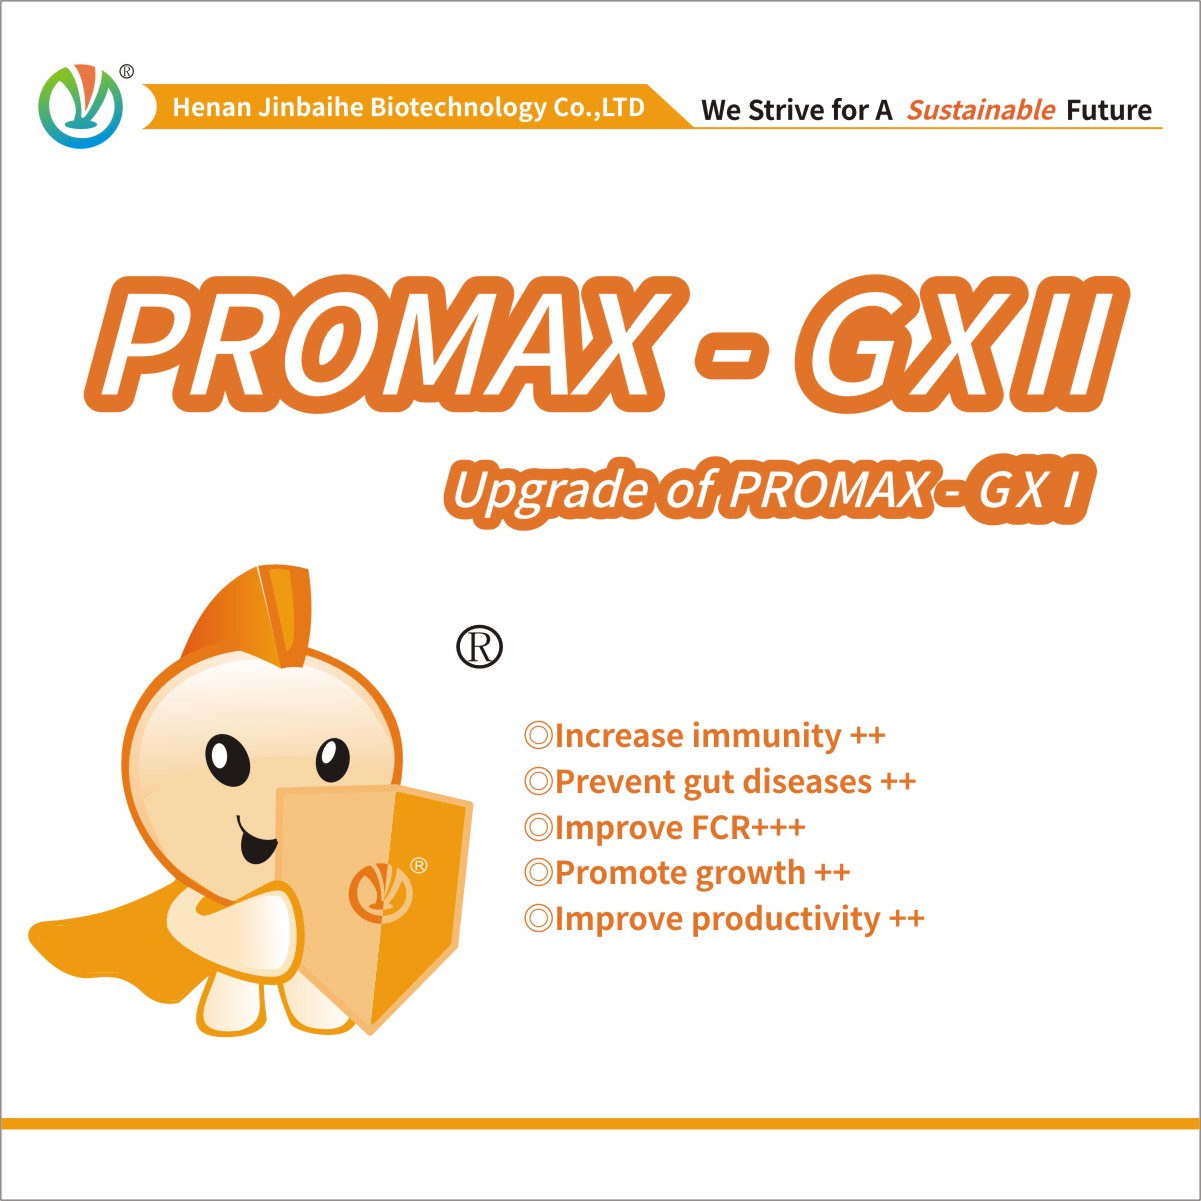  PROMAX-GX II